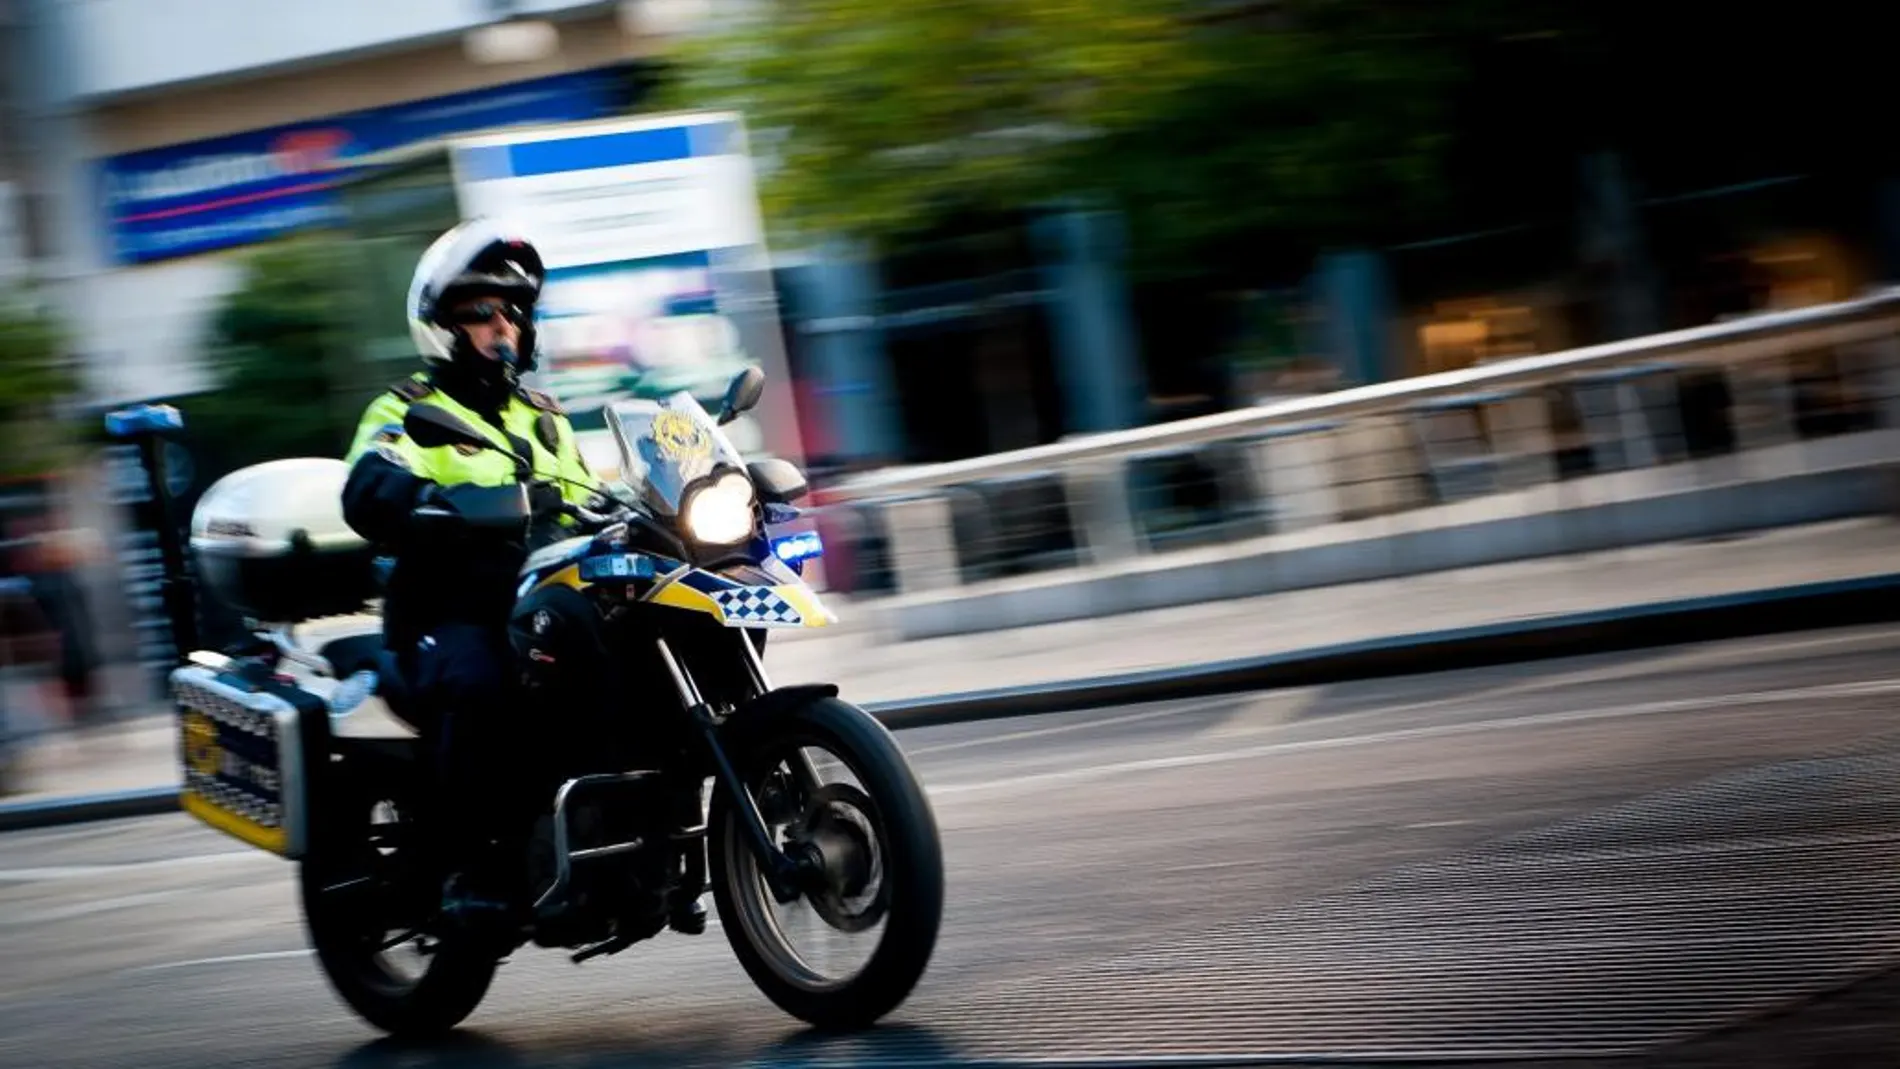 La Generalitat prepara una ley para conformar un cuerpo de Policía autonómica